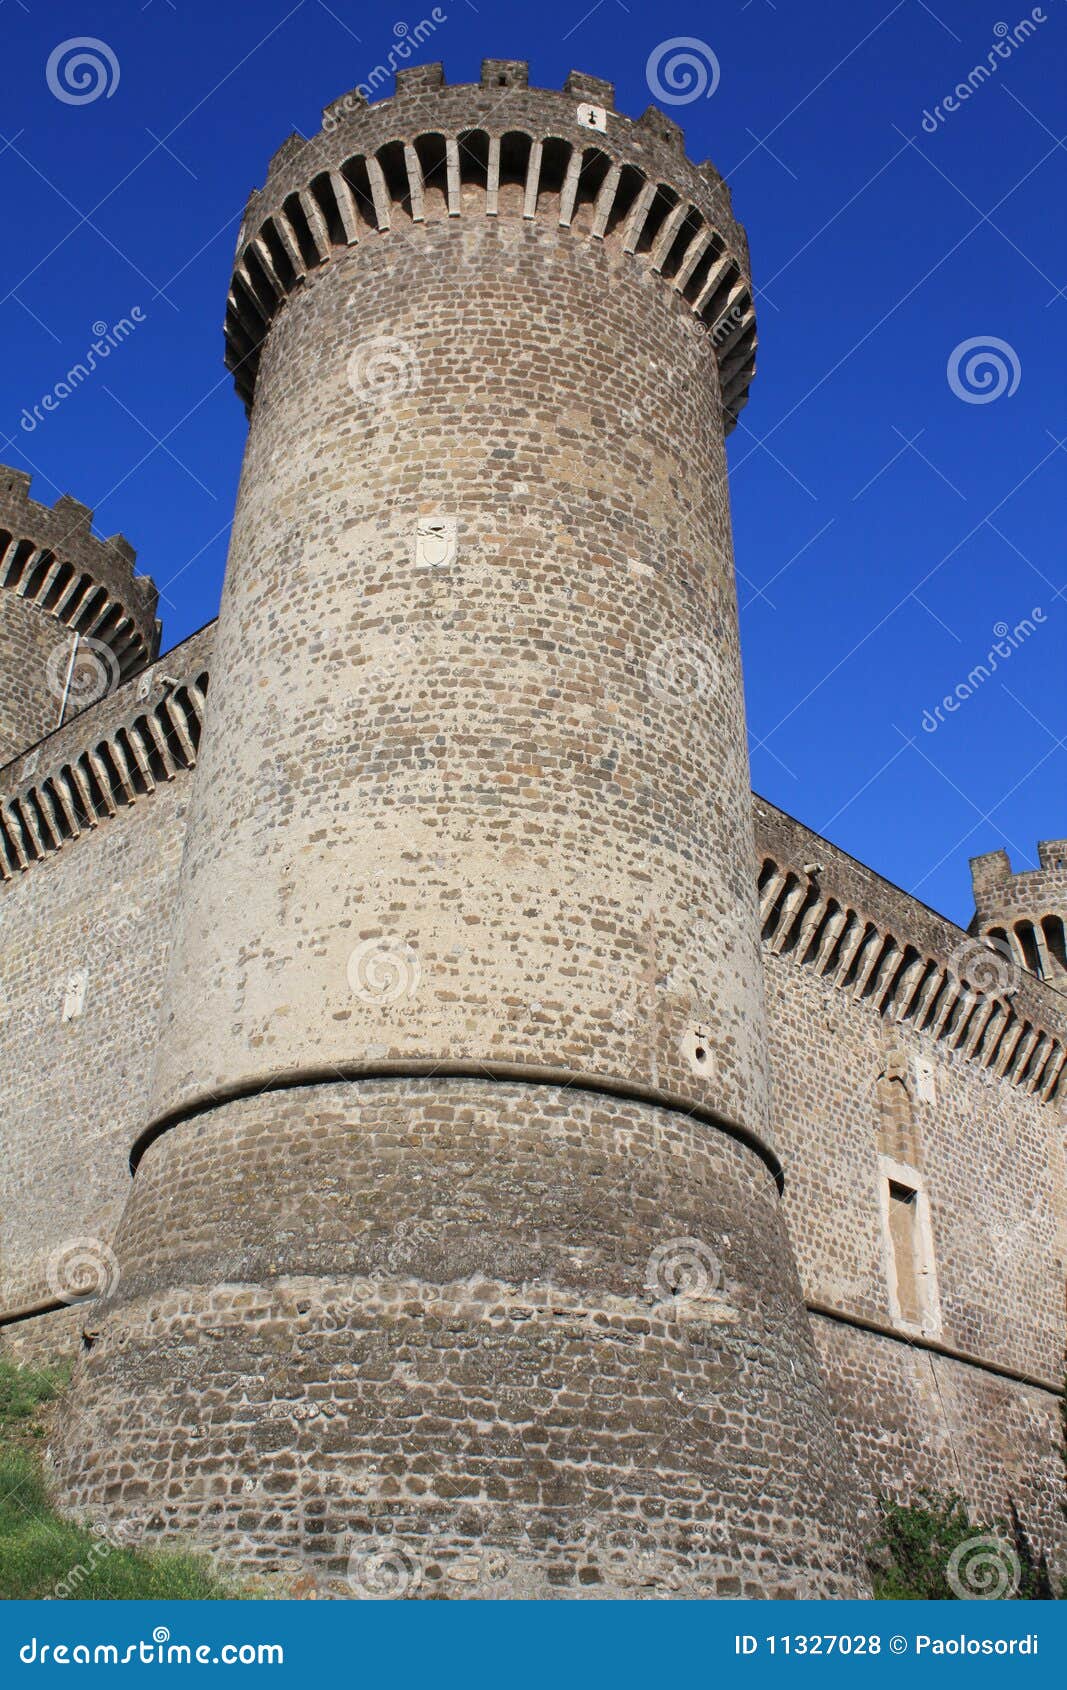 castle of rocca pia in tivoli (roma, italy)